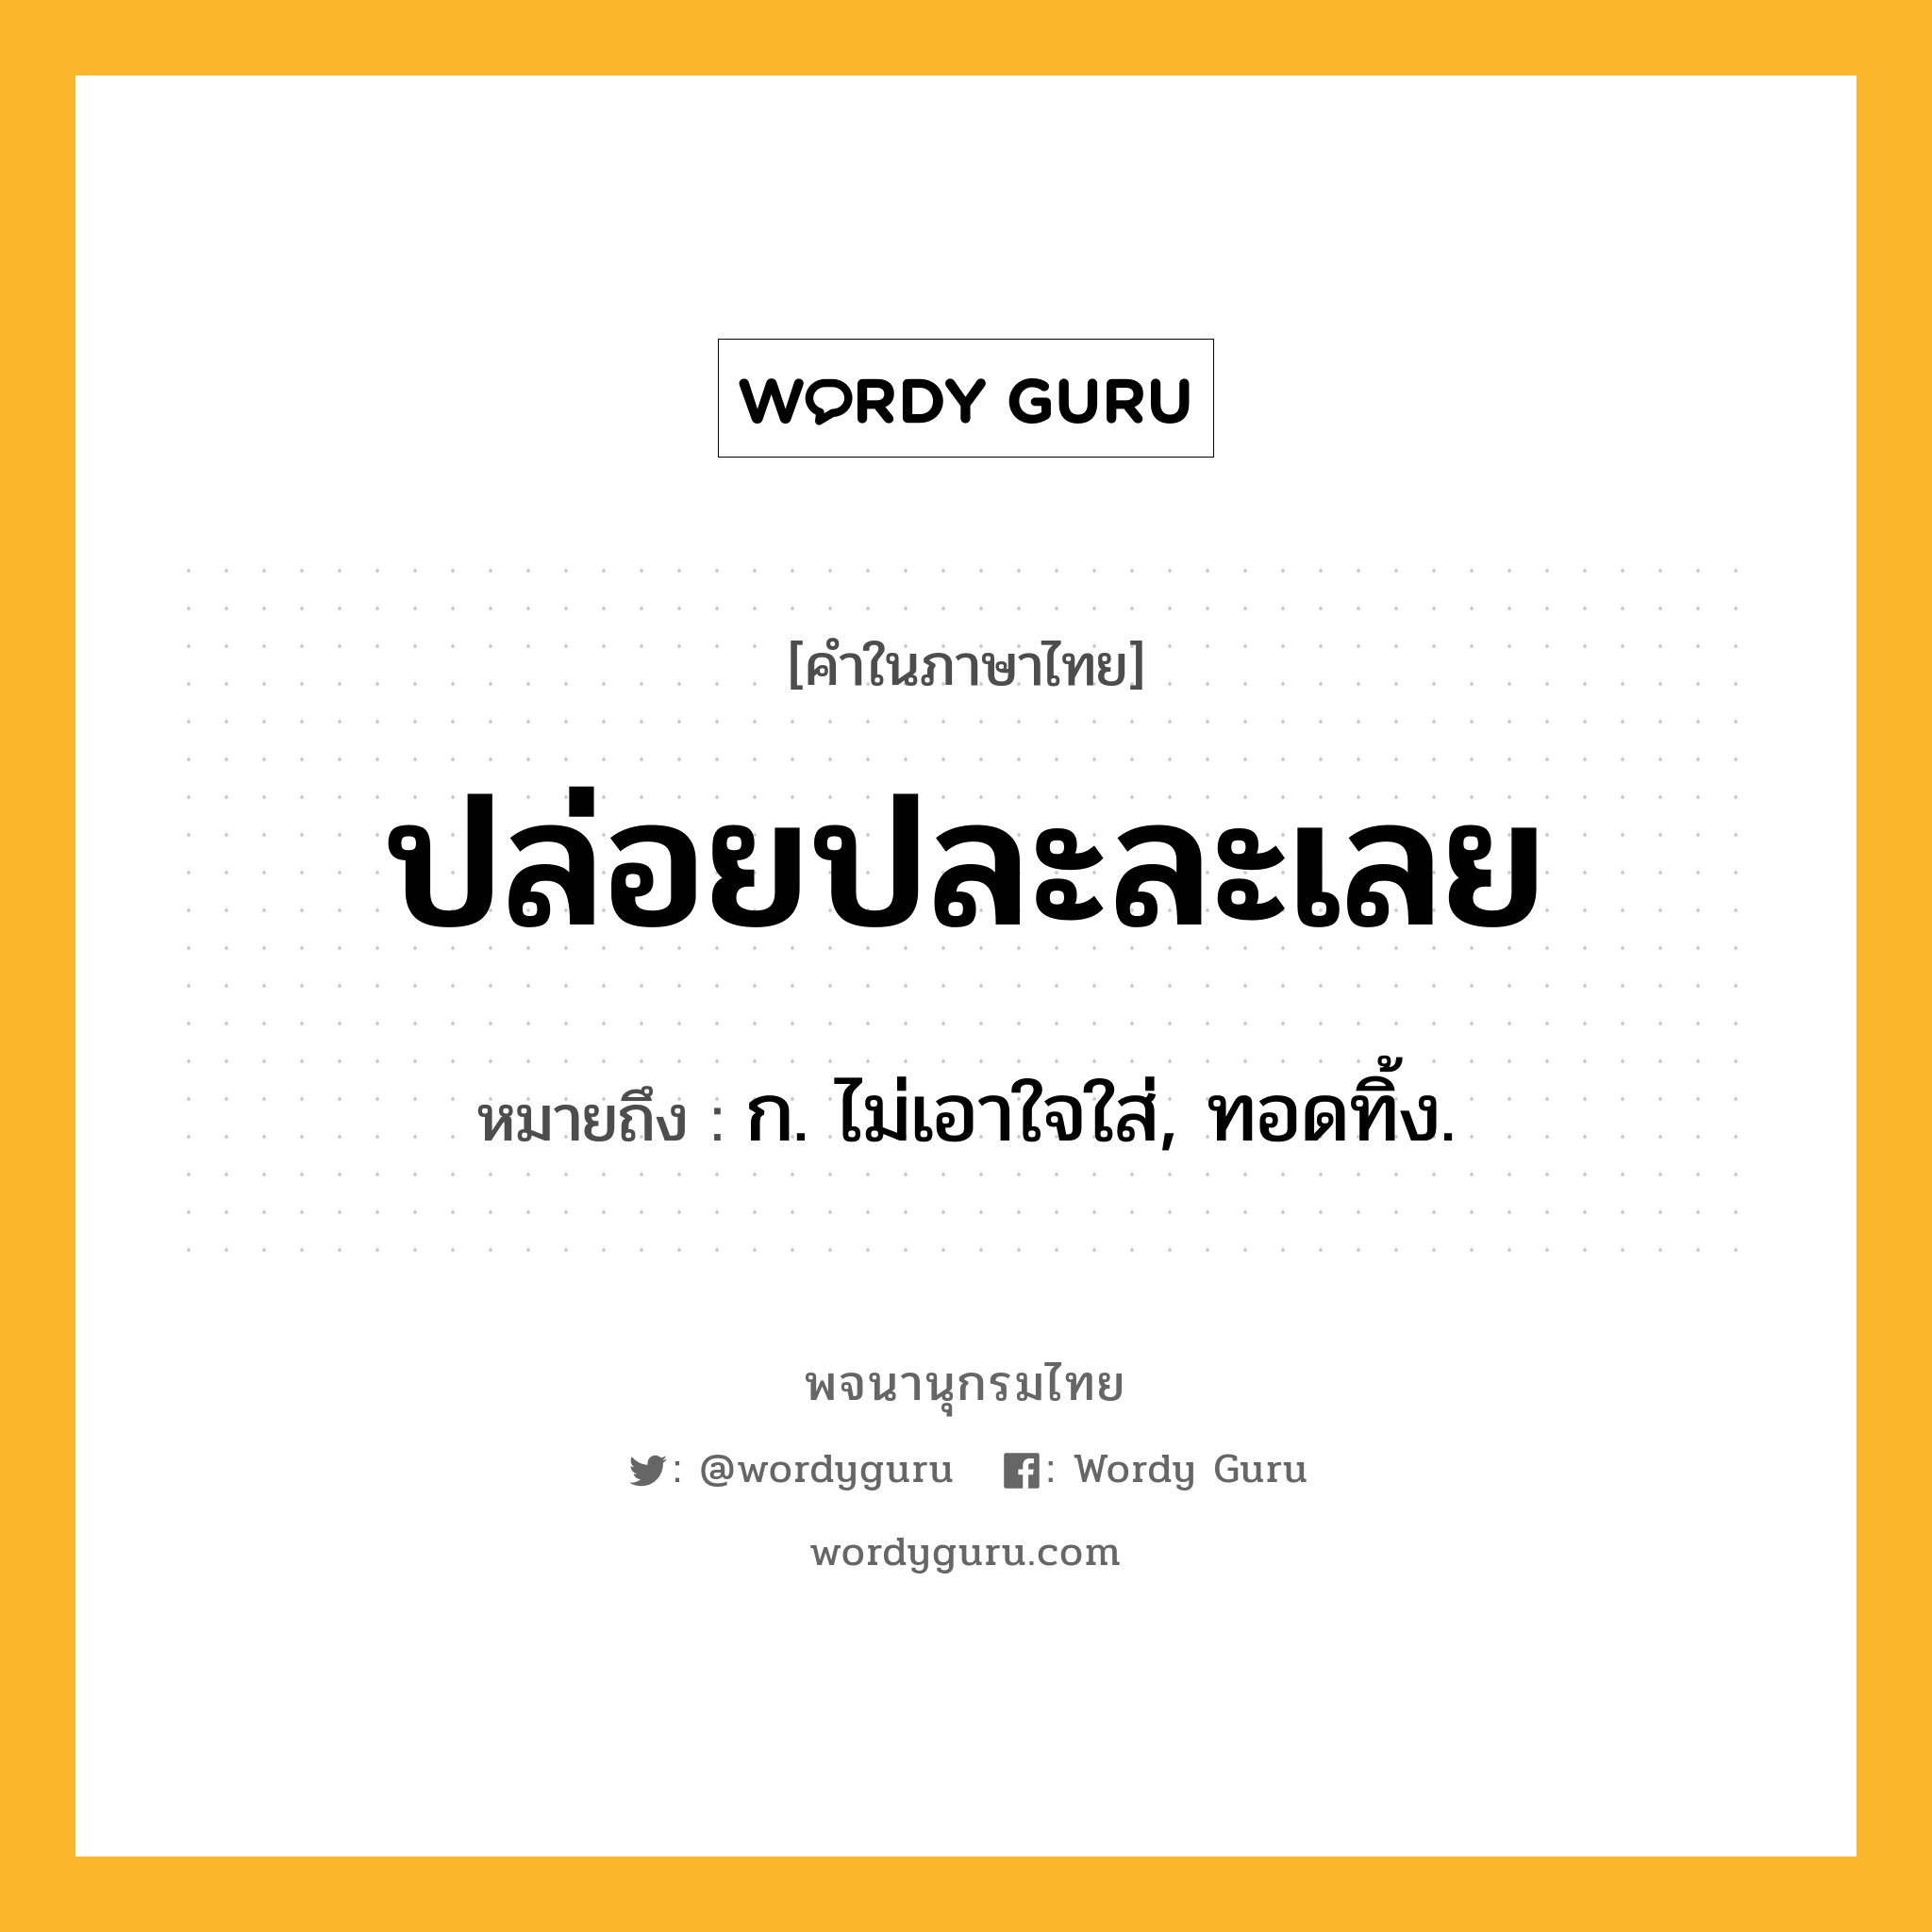 ปล่อยปละละเลย ความหมาย หมายถึงอะไร?, คำในภาษาไทย ปล่อยปละละเลย หมายถึง ก. ไม่เอาใจใส่, ทอดทิ้ง.